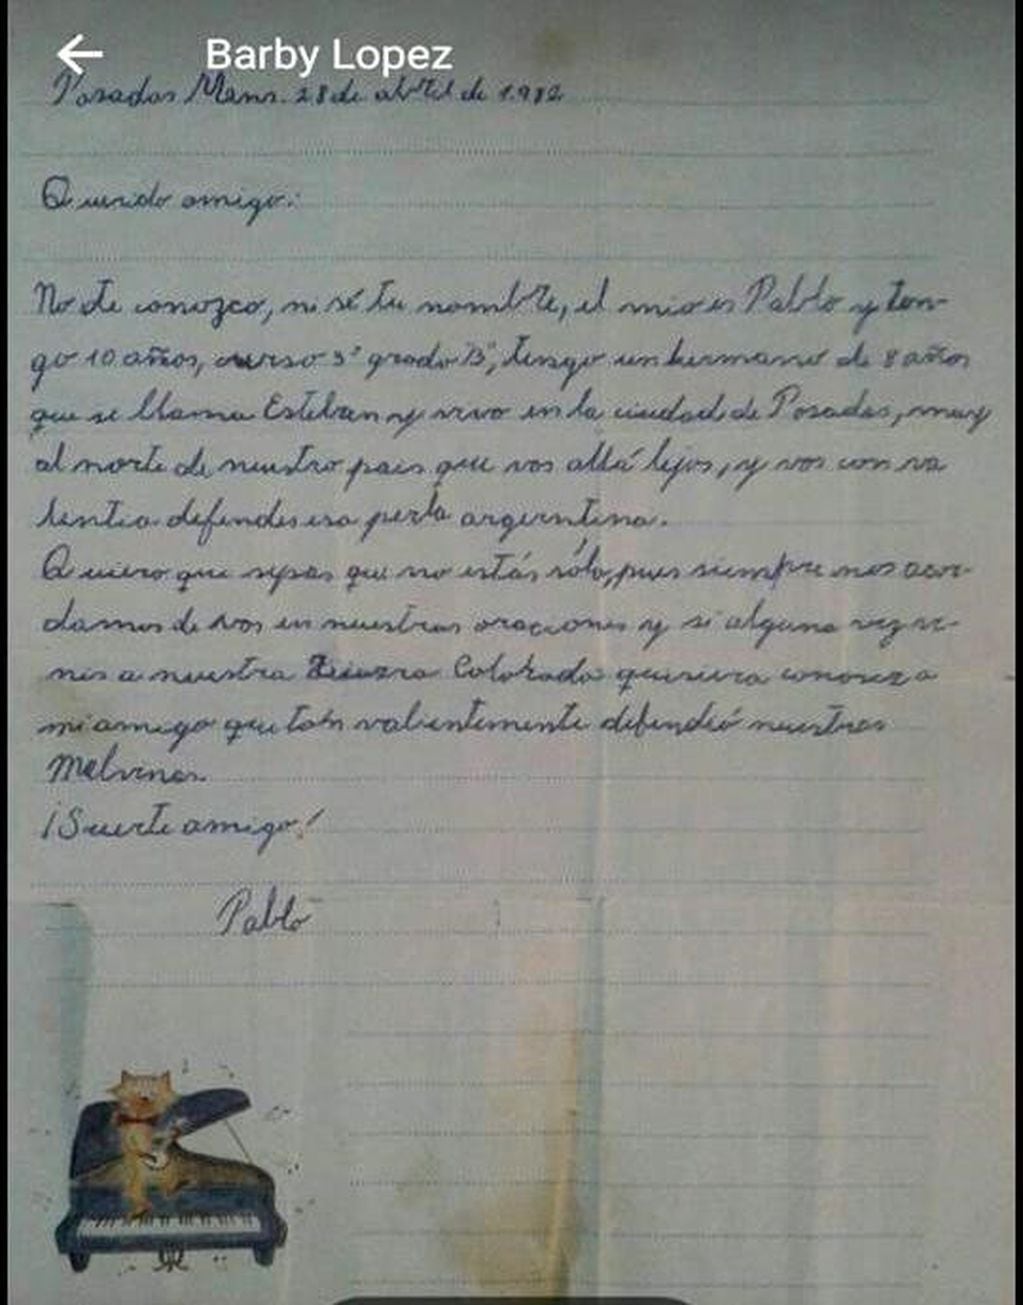 Carta escrita por Pablo.